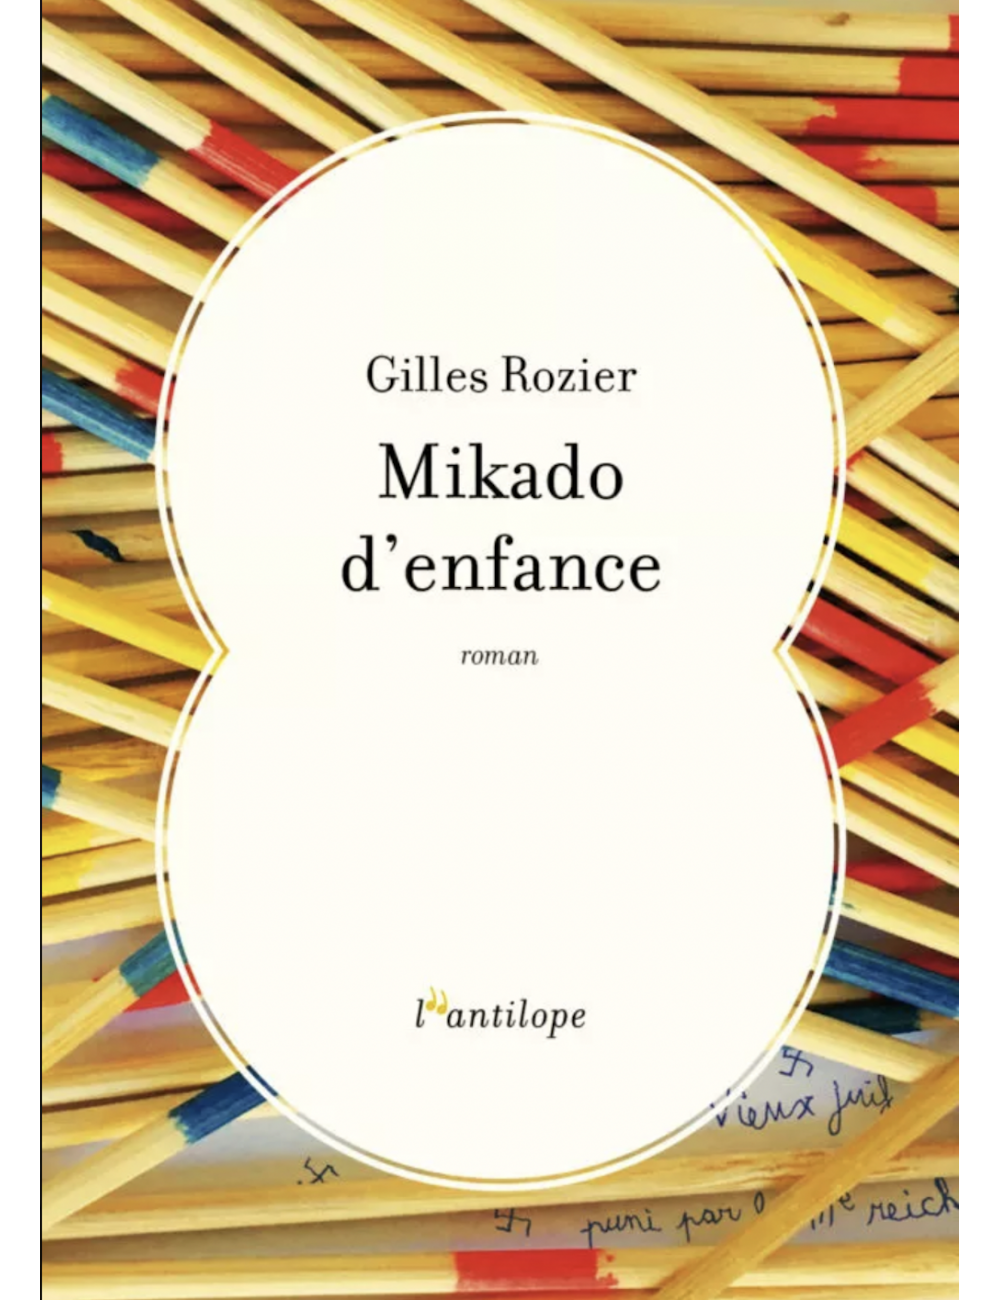 Le livre Mikado d'enfance de Gilles Rozier Éditions de l'Antilope